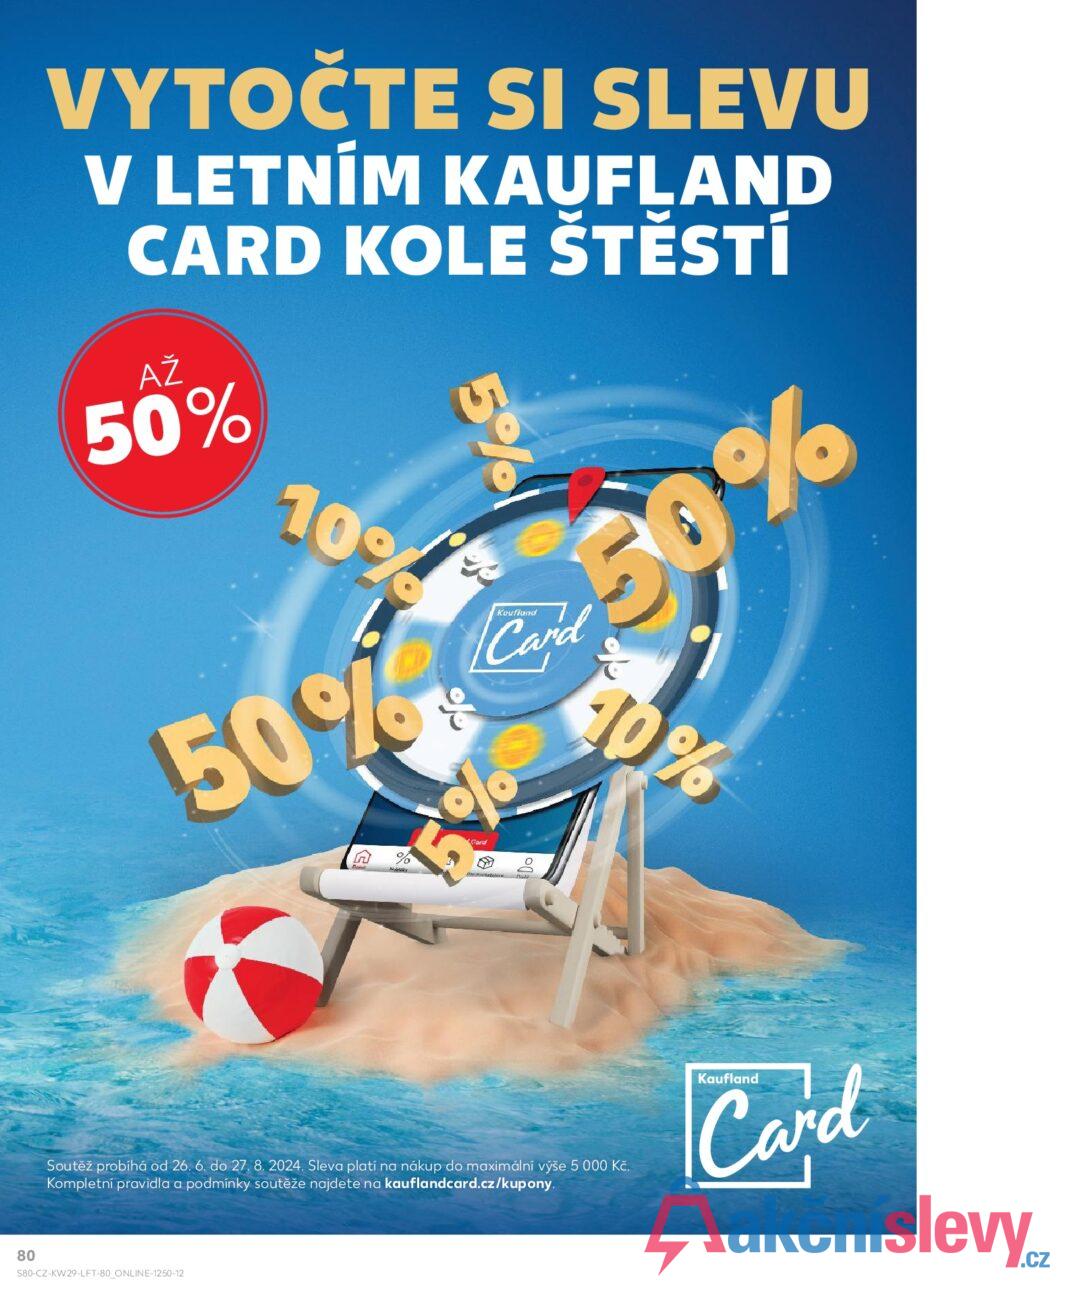 VYTOČTE SI SLEVU V LETNÍM KAUFLAND CARD KOLE ŠTĚSTÍ AŽ 50% 5% 10% 50% Kaufland Card 50 60% 10% Card Soutěž probíhá od 26. 6. do 27. 8. 2024. Sleva platí na nákup do maximální výše 5 000 Kč. Kompletní pravidla a podmínky soutěže najdete na kauflandcard.cz/kupony. 80 S80-CZ-KW29-LFT-80_ONLINE-1250-12 Kaufland Card है